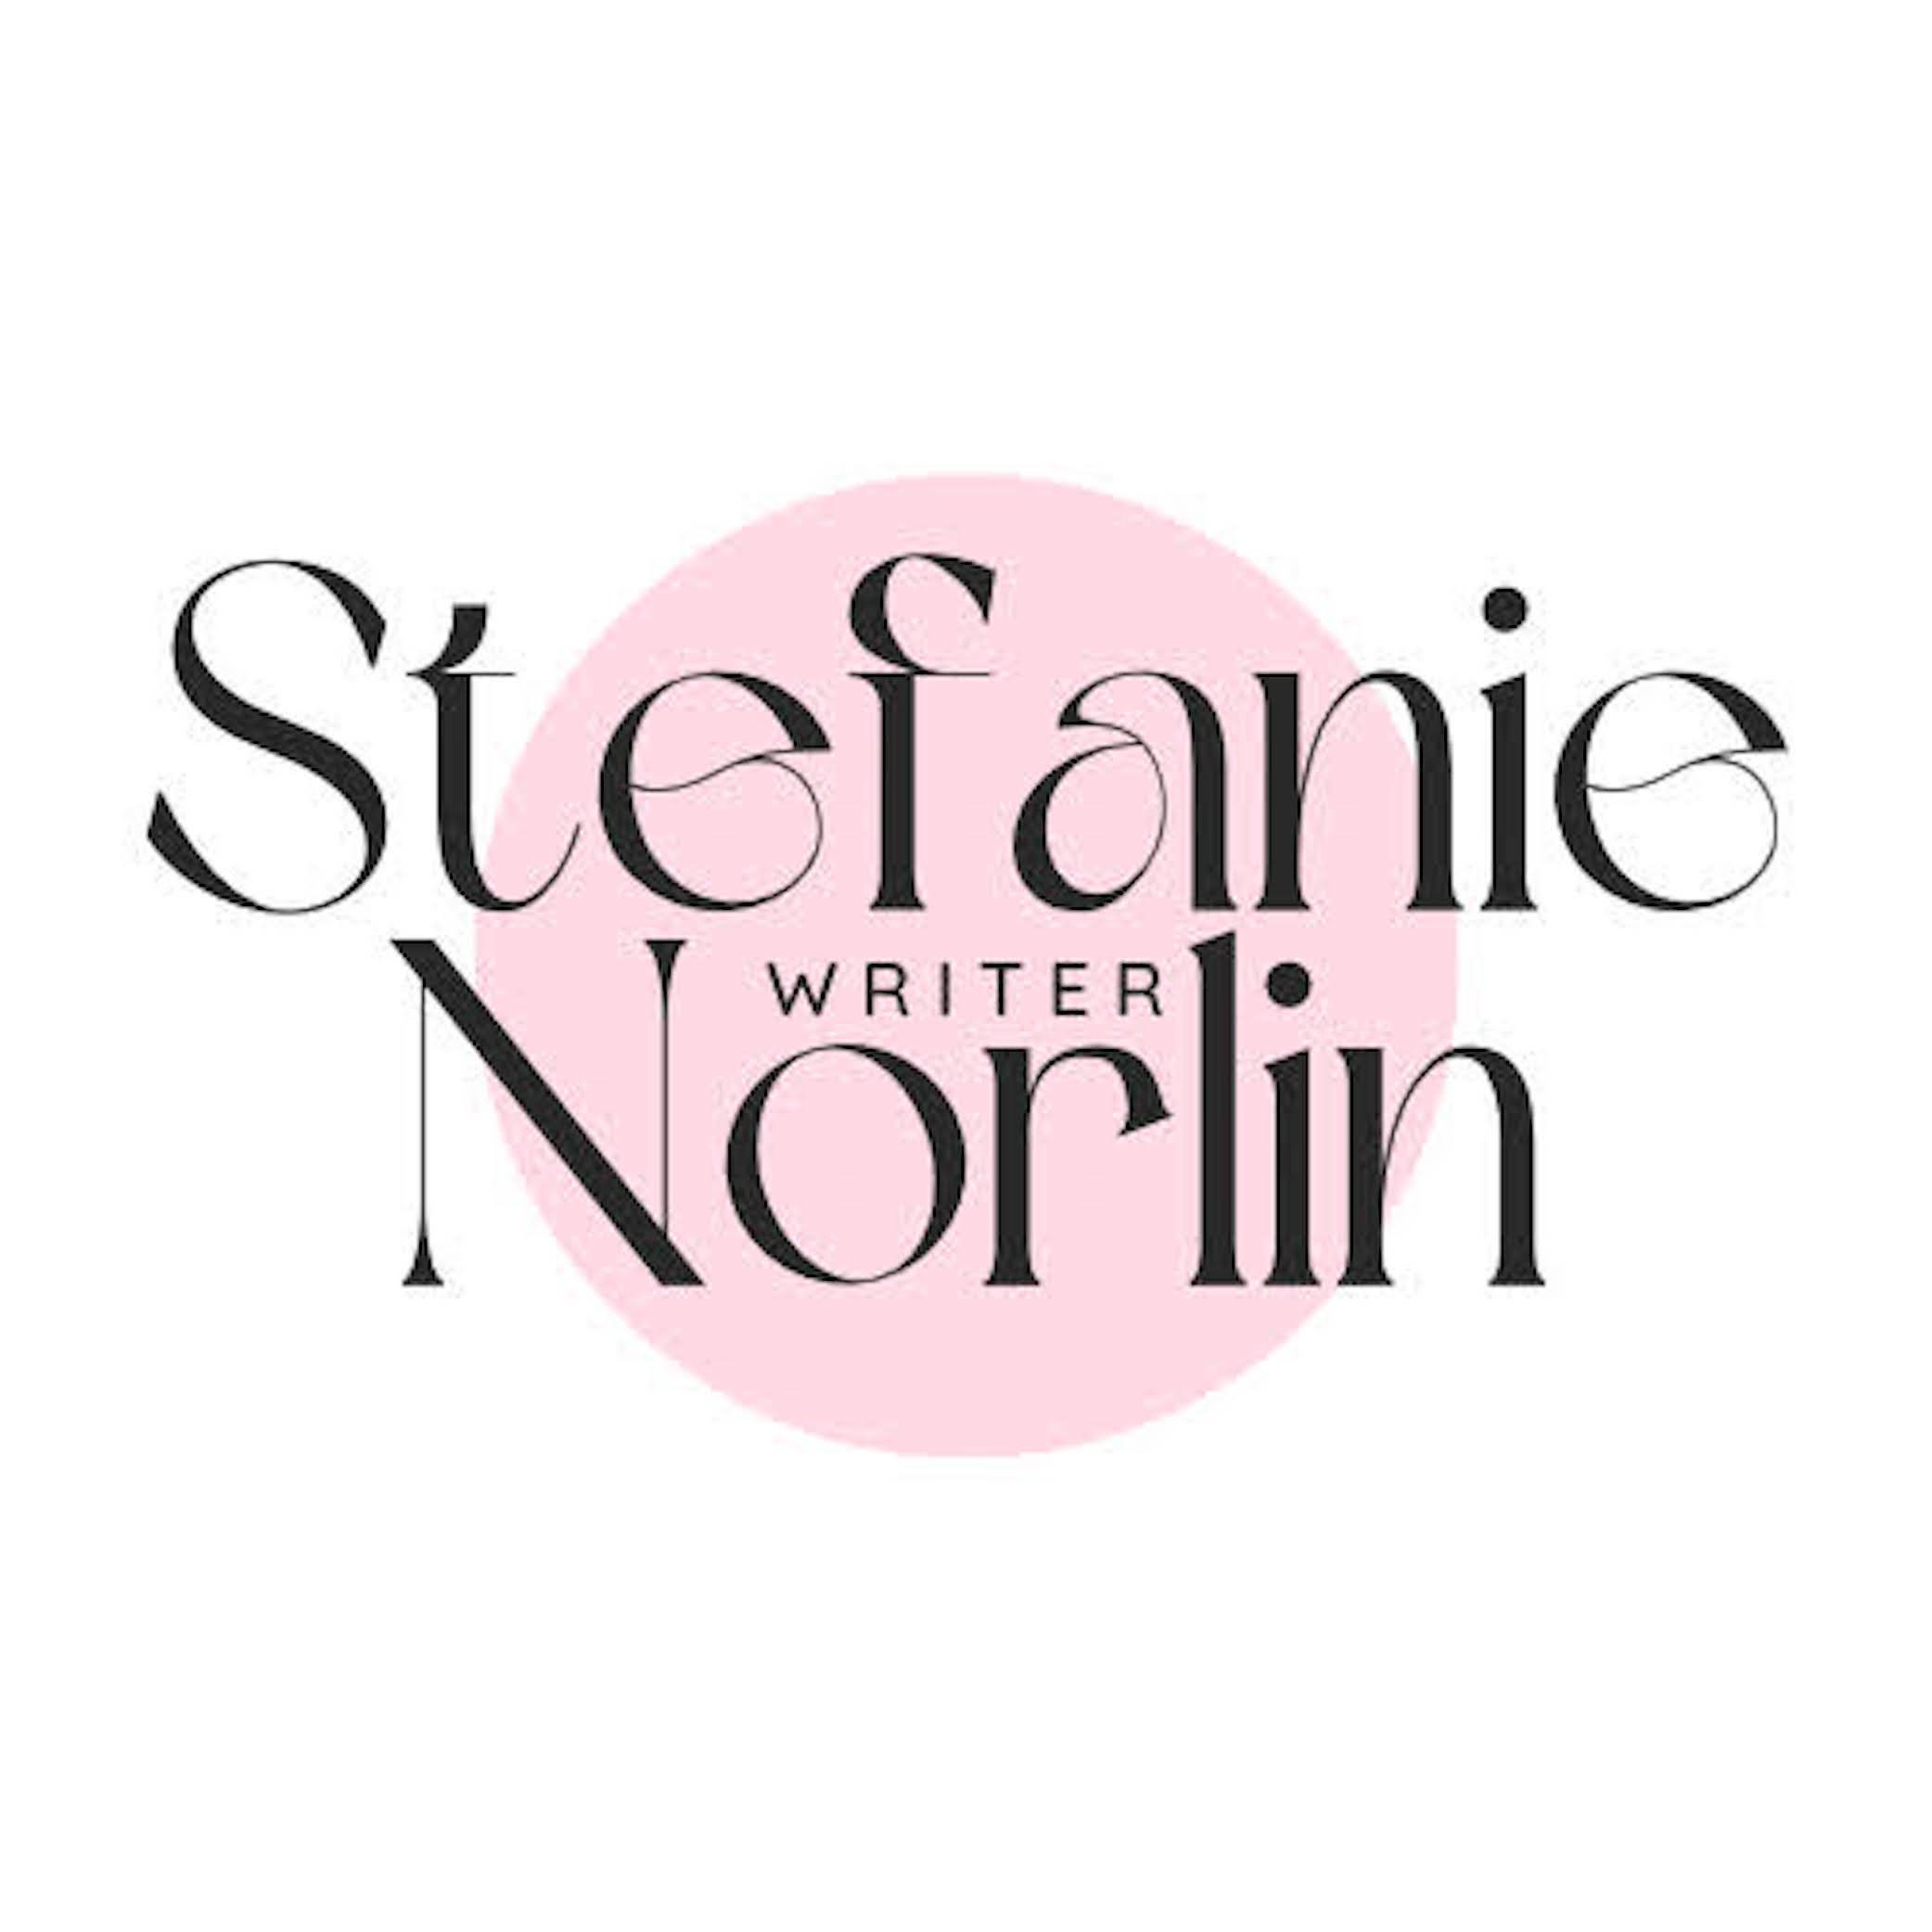 Stefanie Norlin